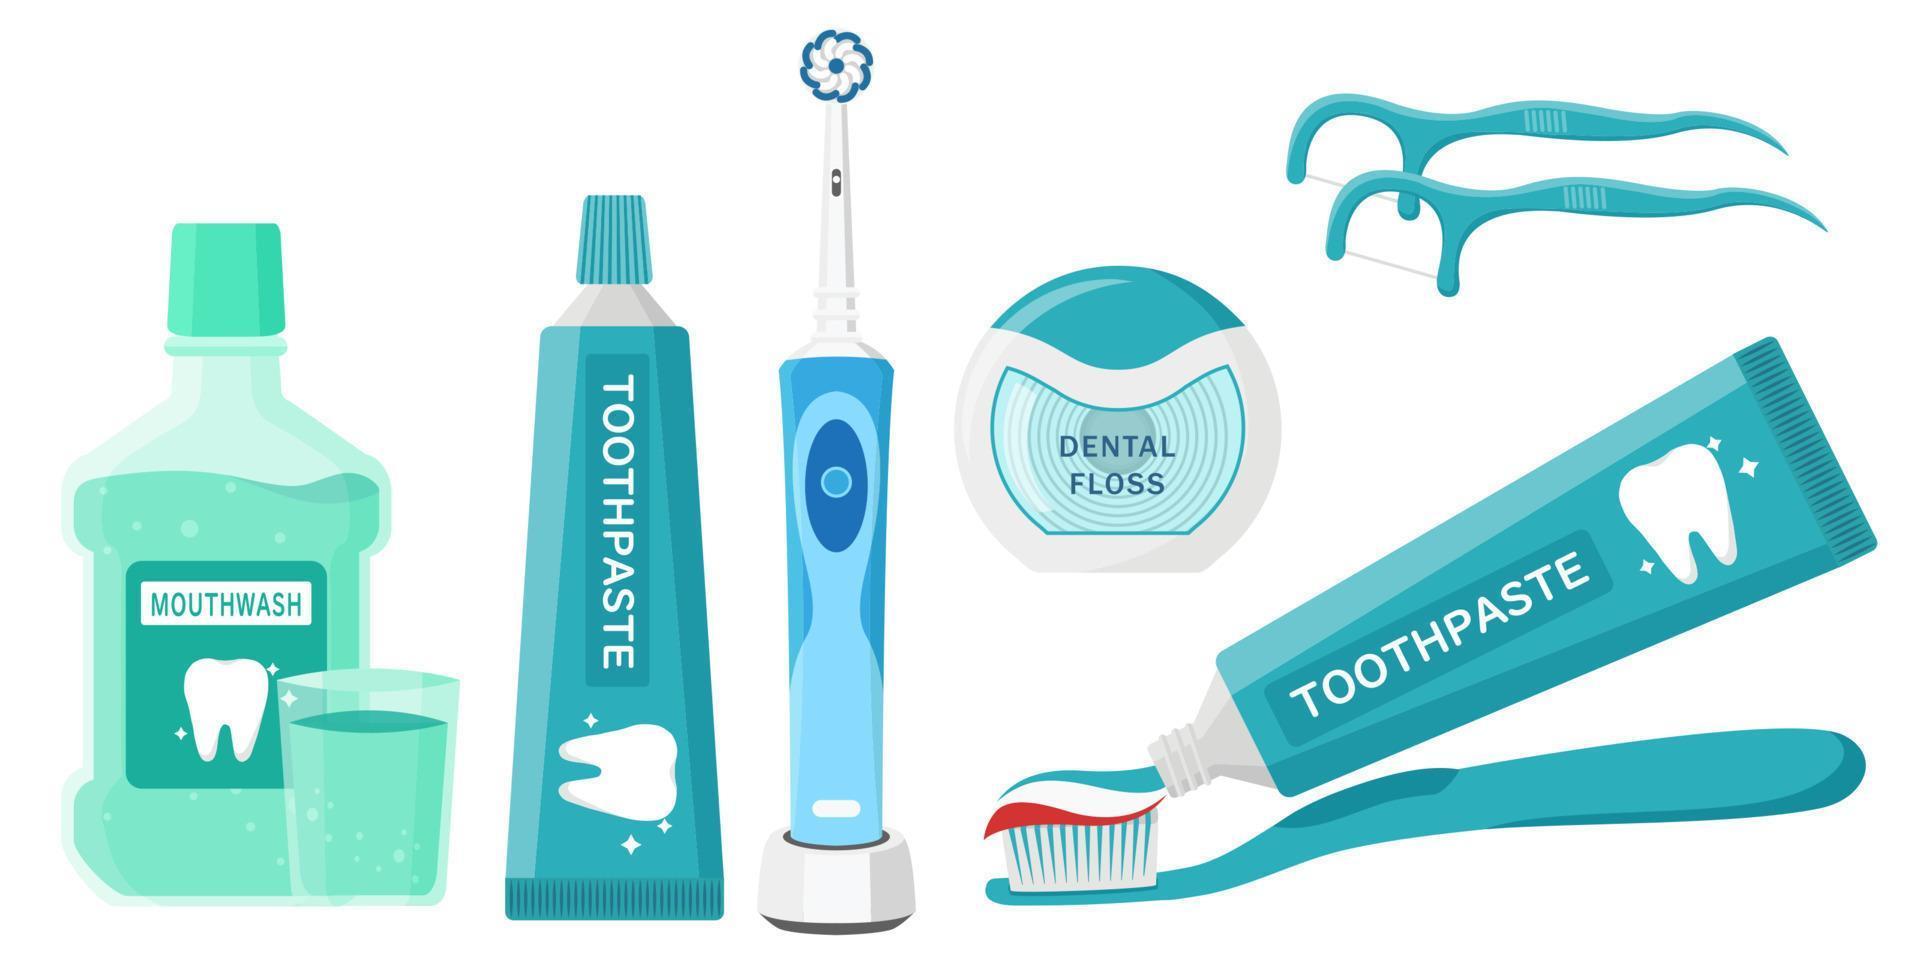 Sammlung von Mundhygiene-Reinigungswerkzeugen, Zahnpasta, Zahnbürste, Zahnseide und Mundspülflüssigkeit vektor